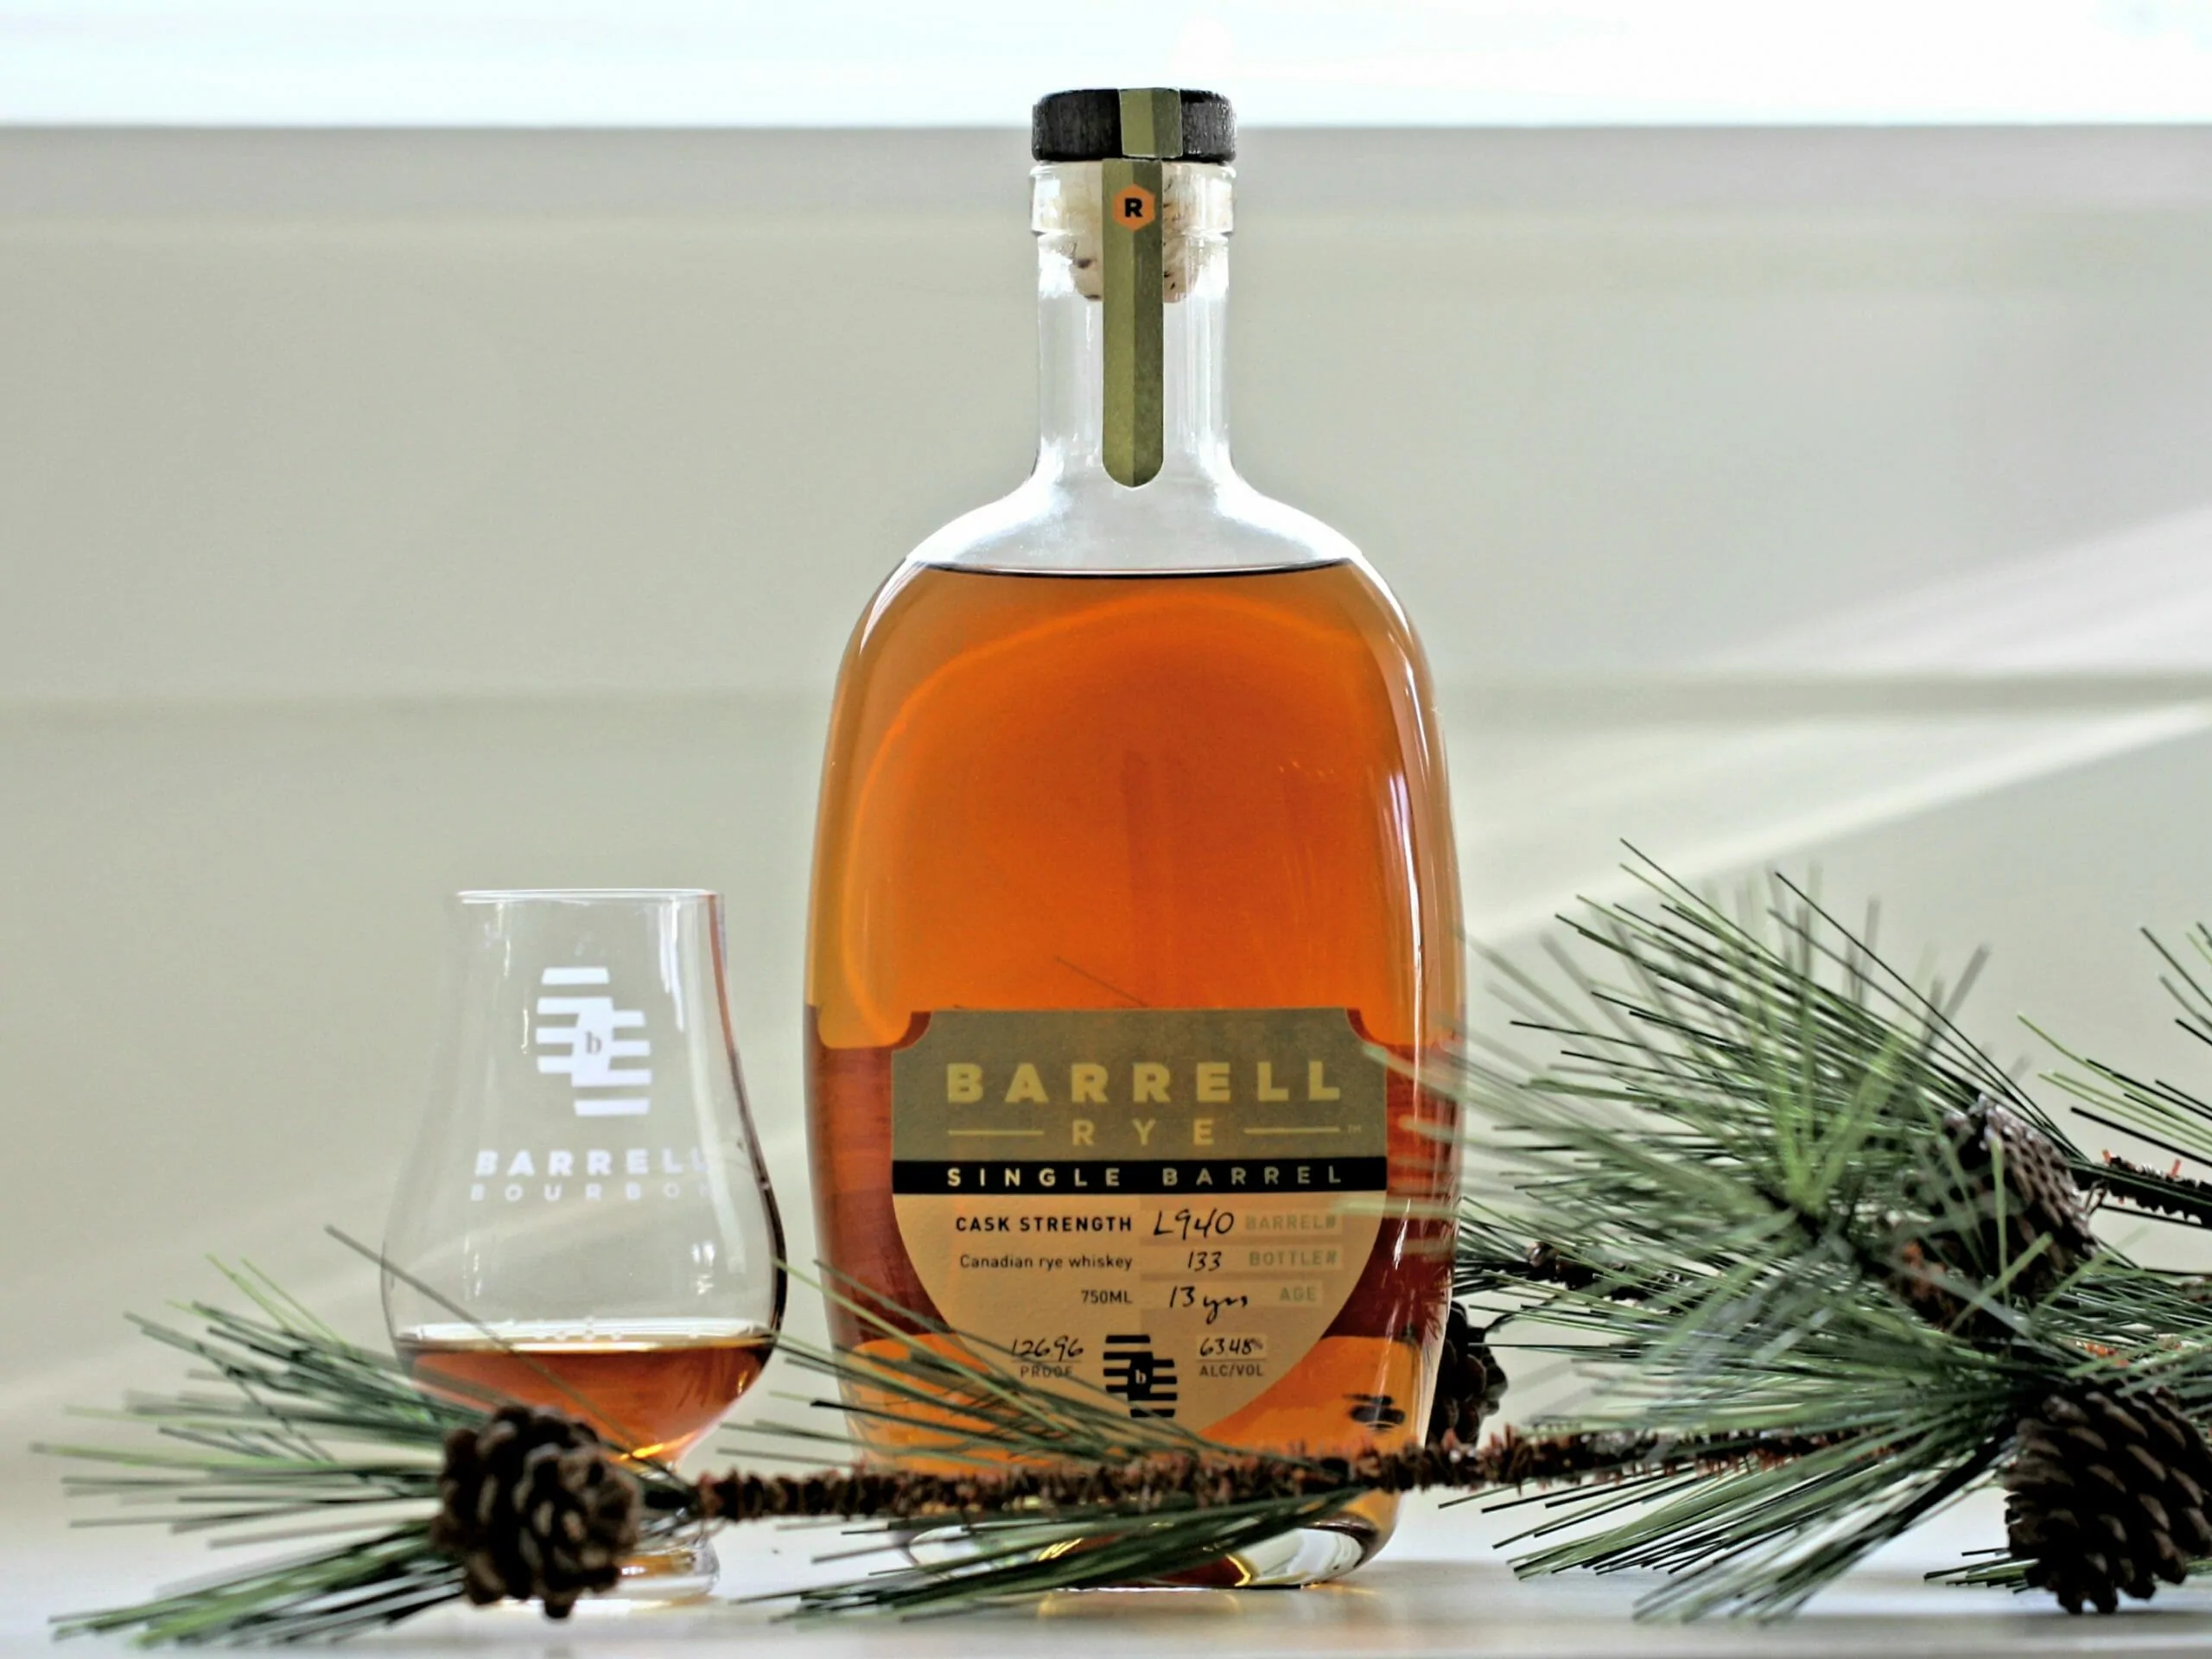 Barrell single barrel rye